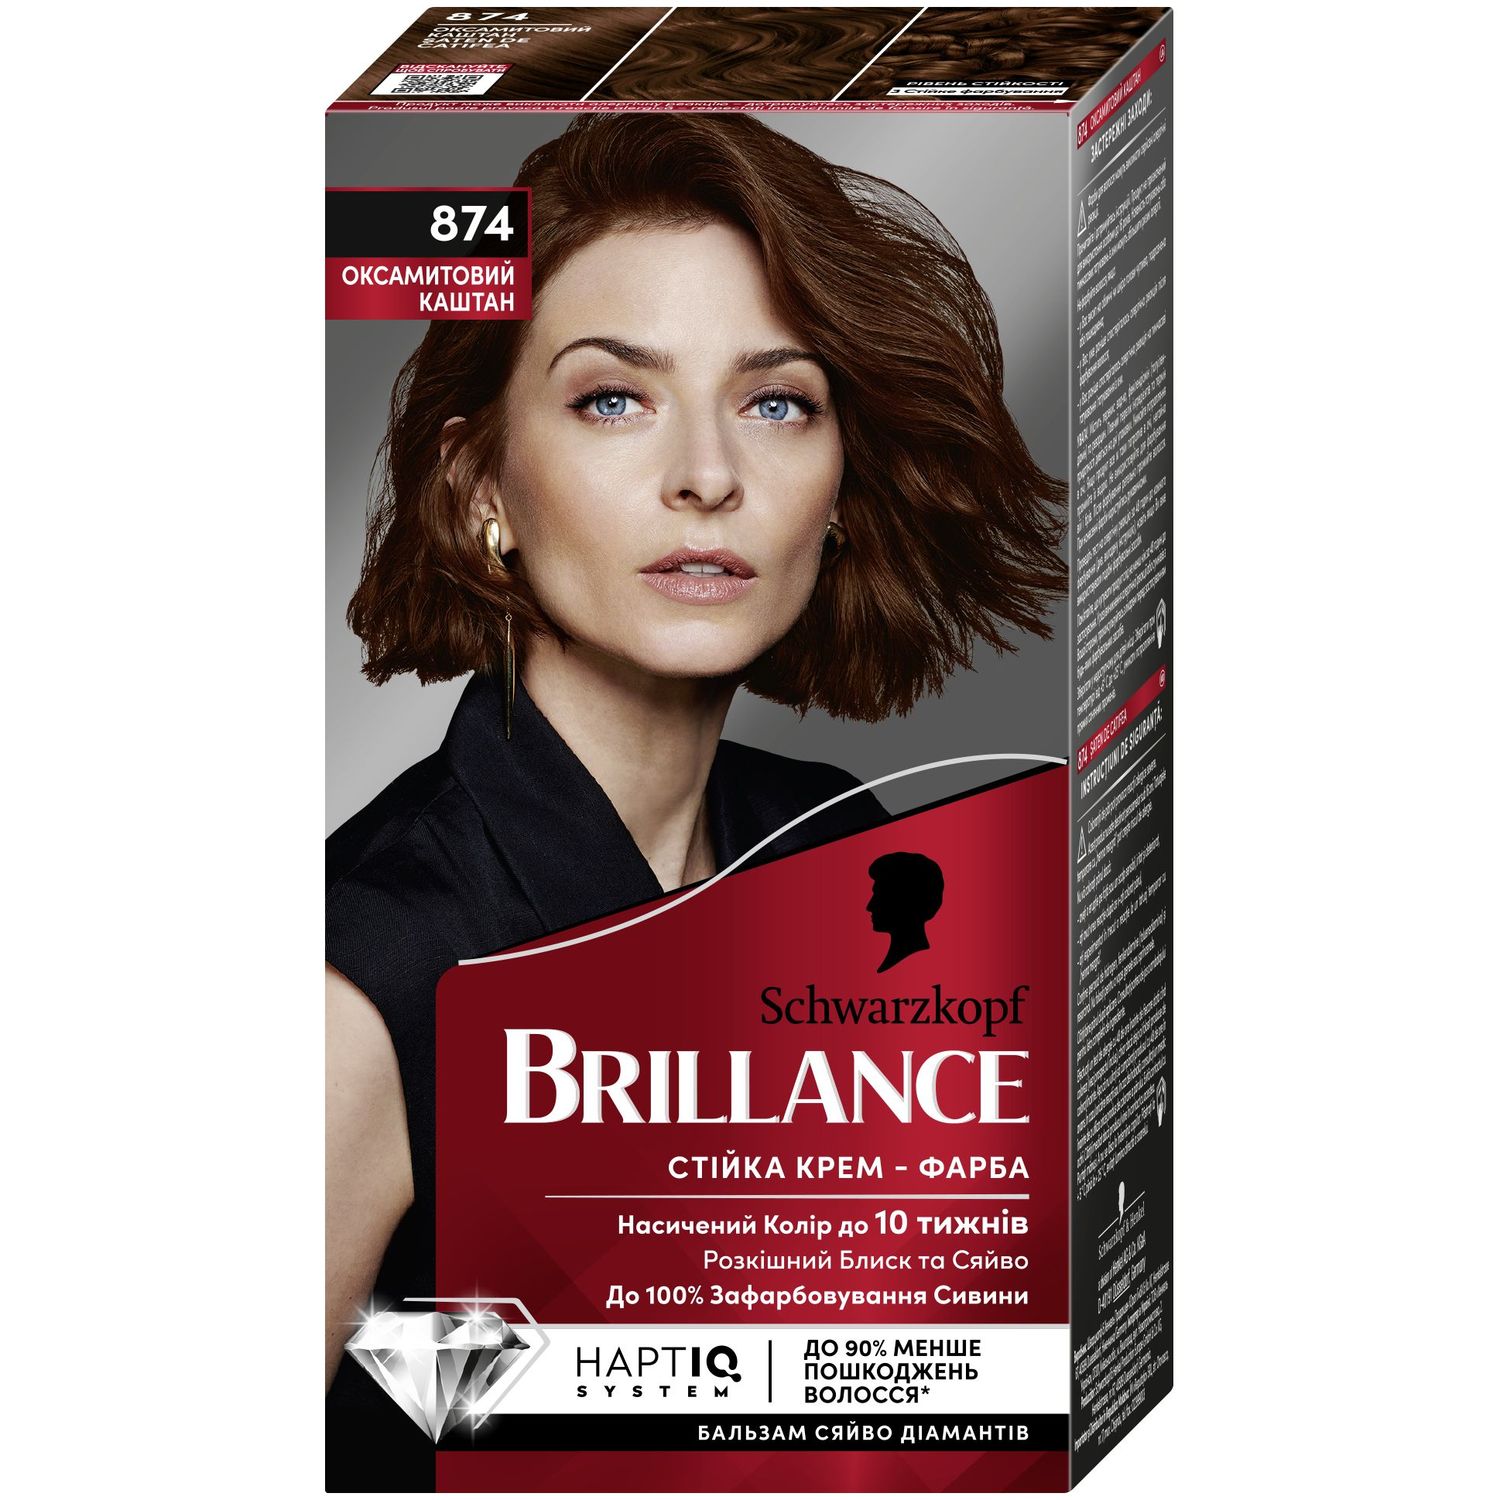 Фарба для волосся Brillance 874 Бархатистий каштан, 160 мл (2025024) - фото 1